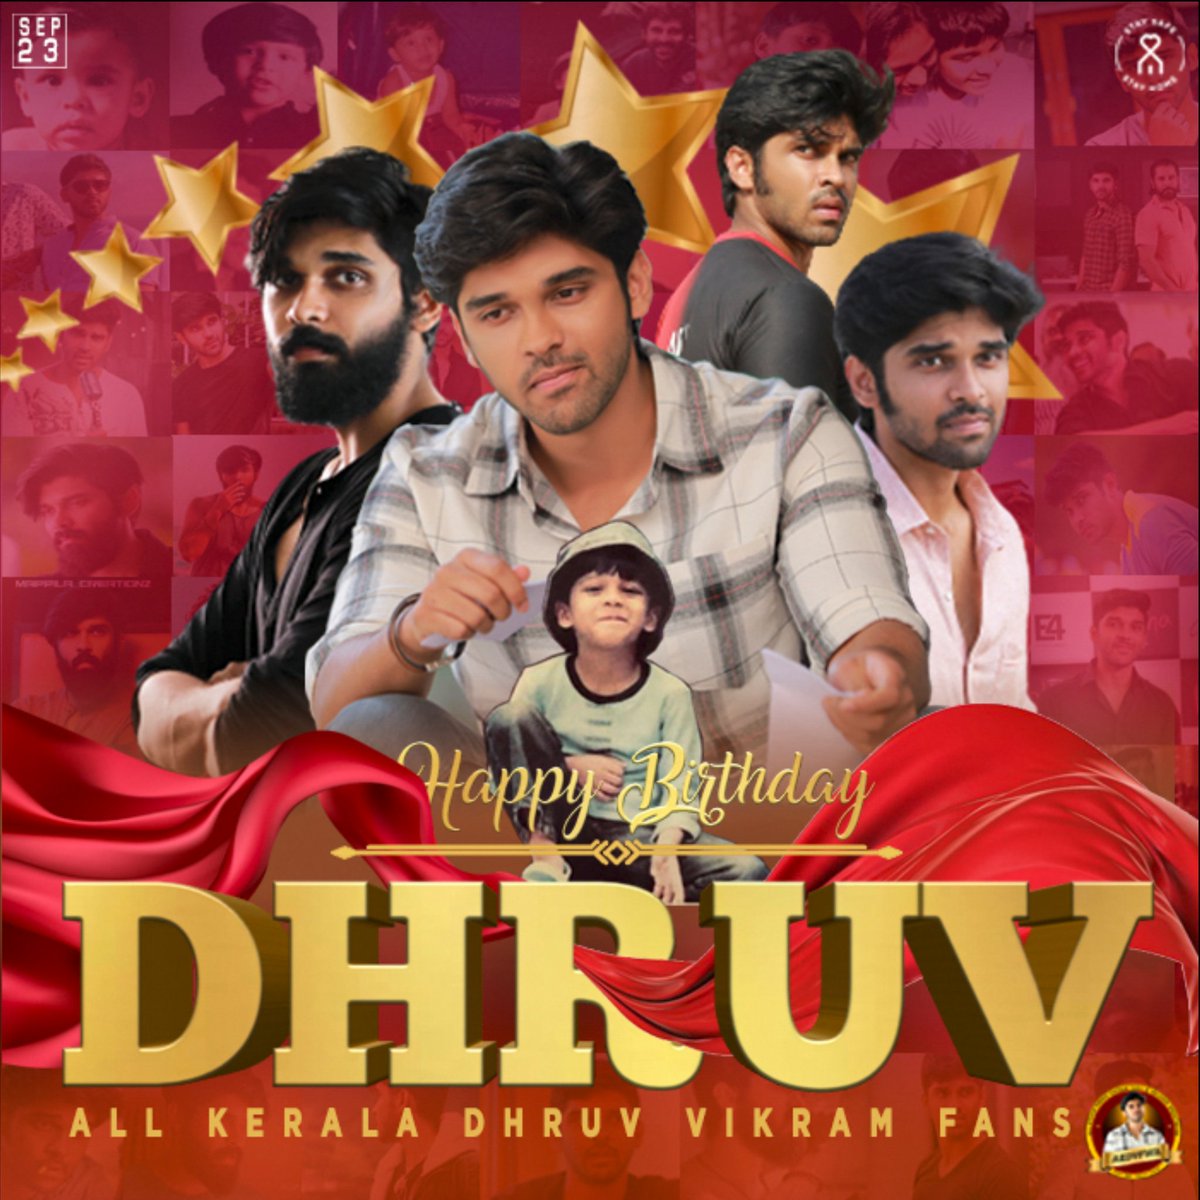 Dhruv Vikram Fans (@DhruvVikramFans) / Twitter